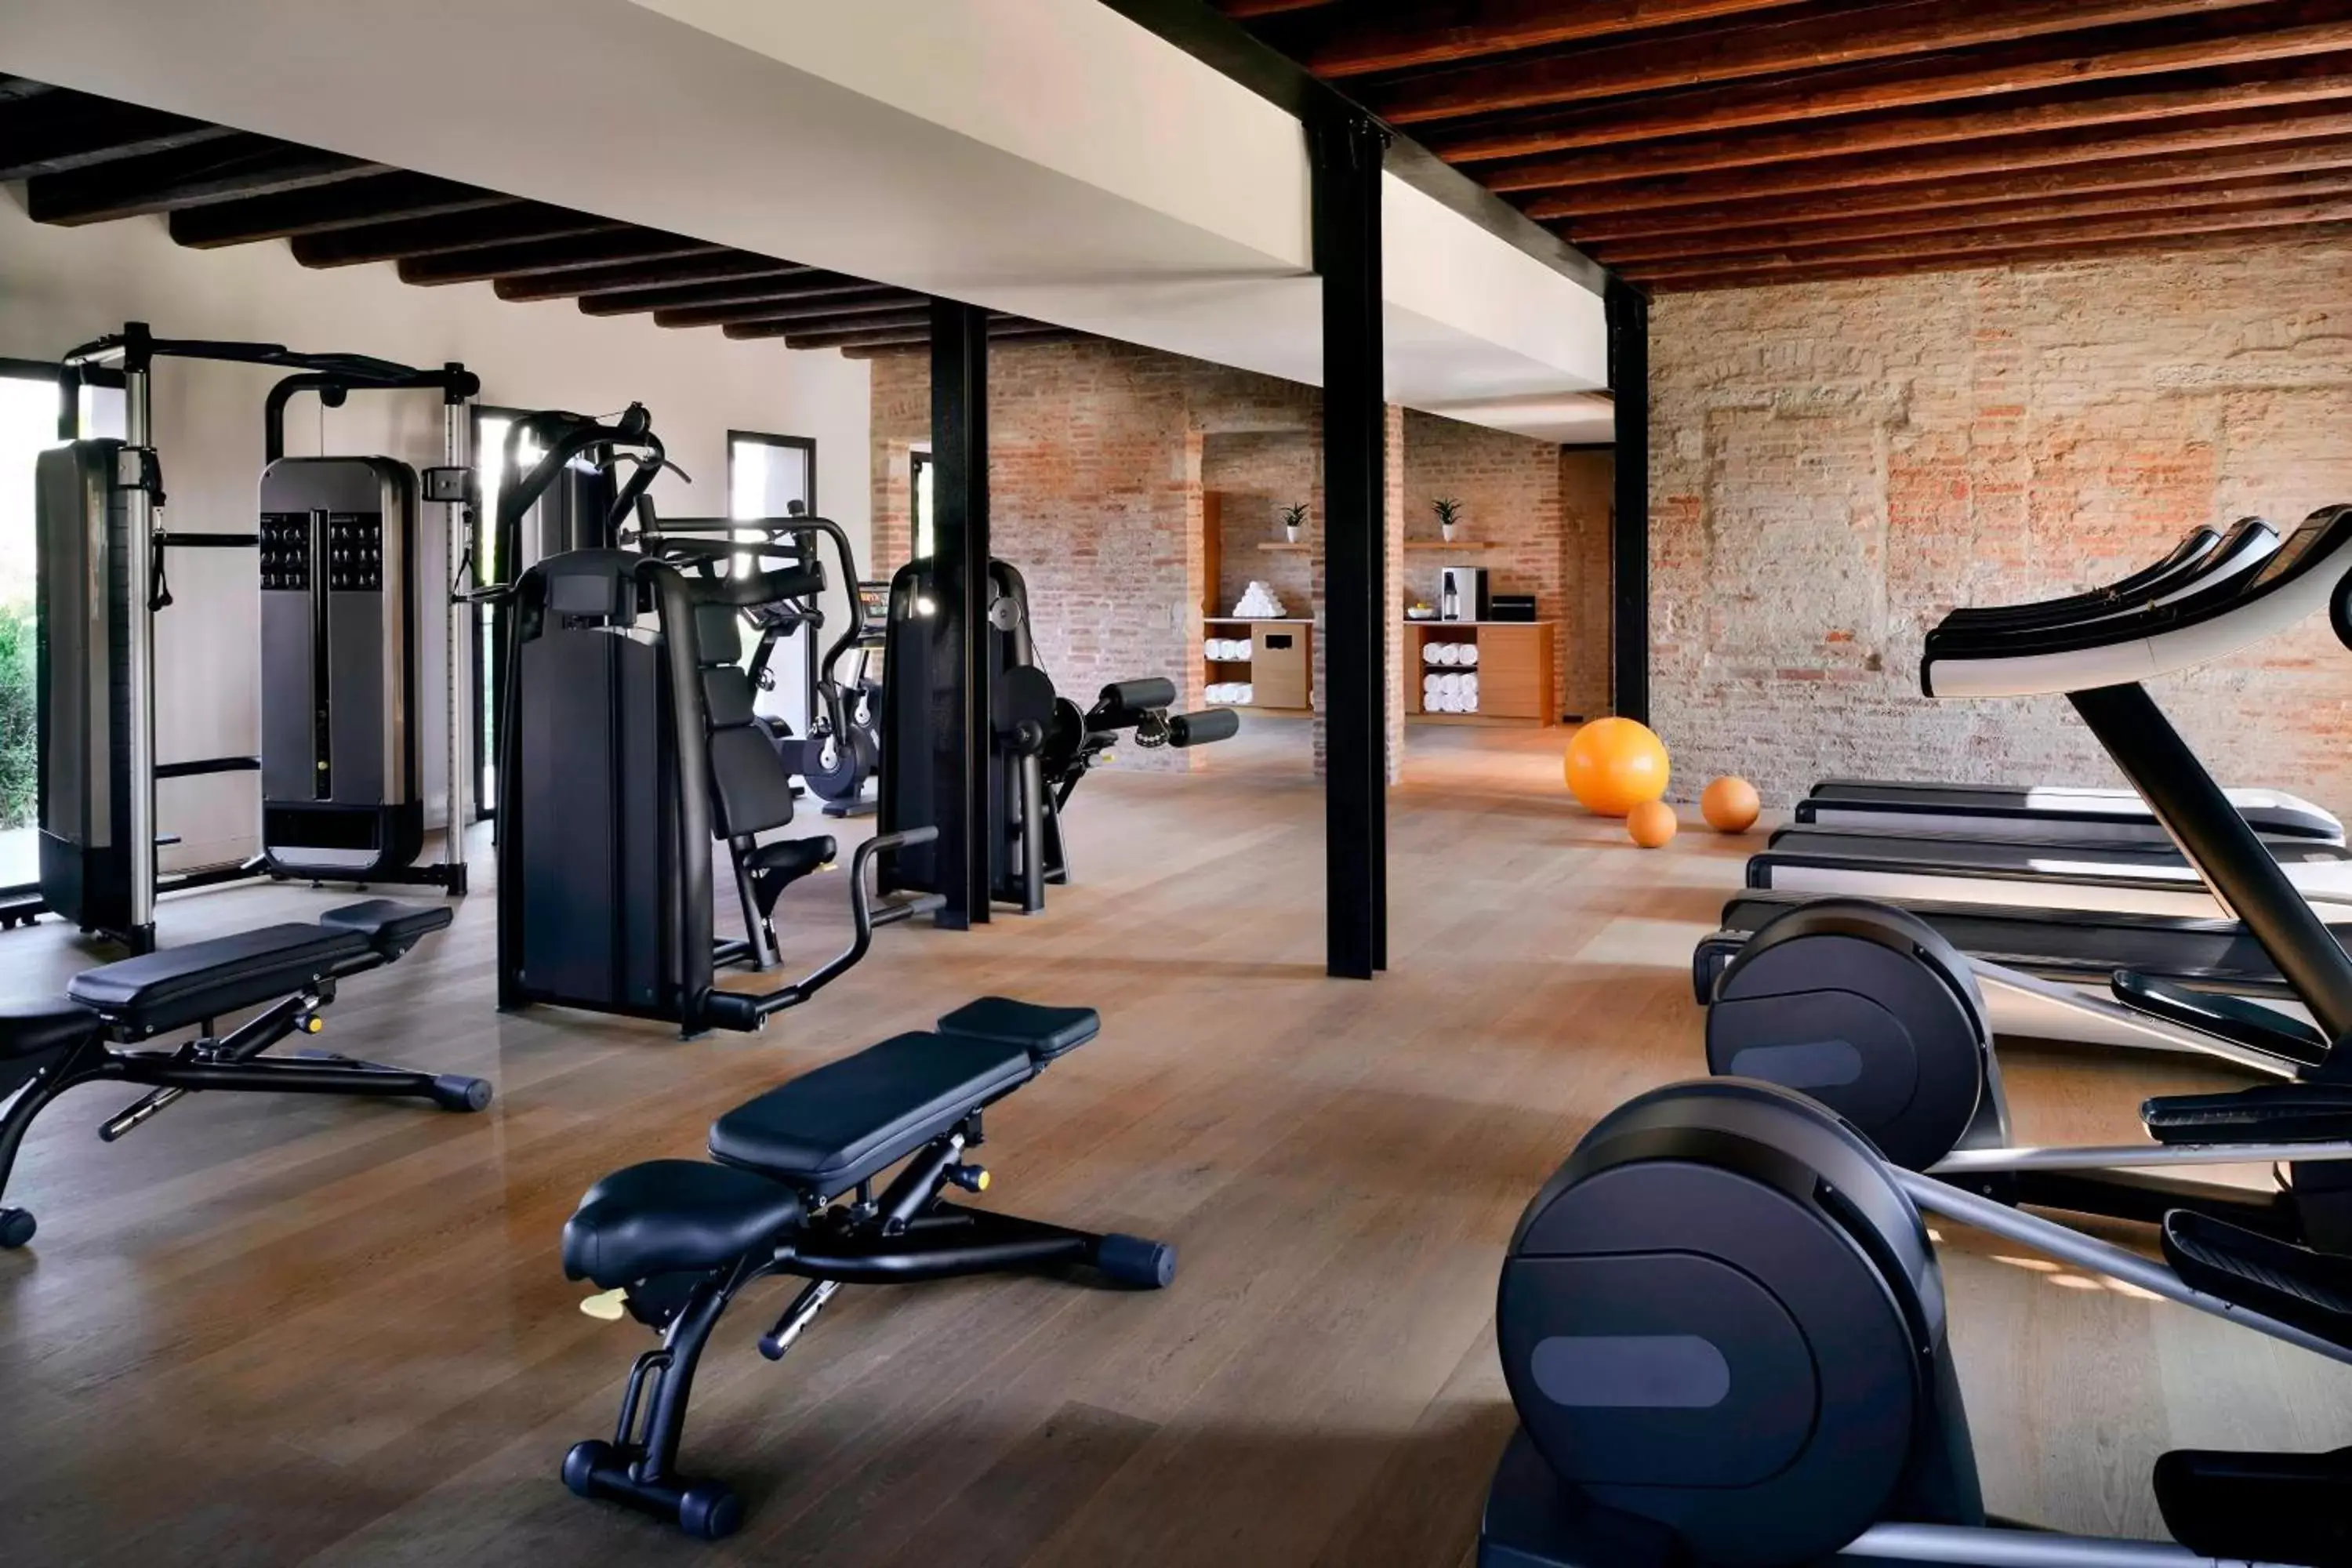 Fitness centre/facilities, Fitness Center/Facilities in JW Marriott Venice Resort & Spa